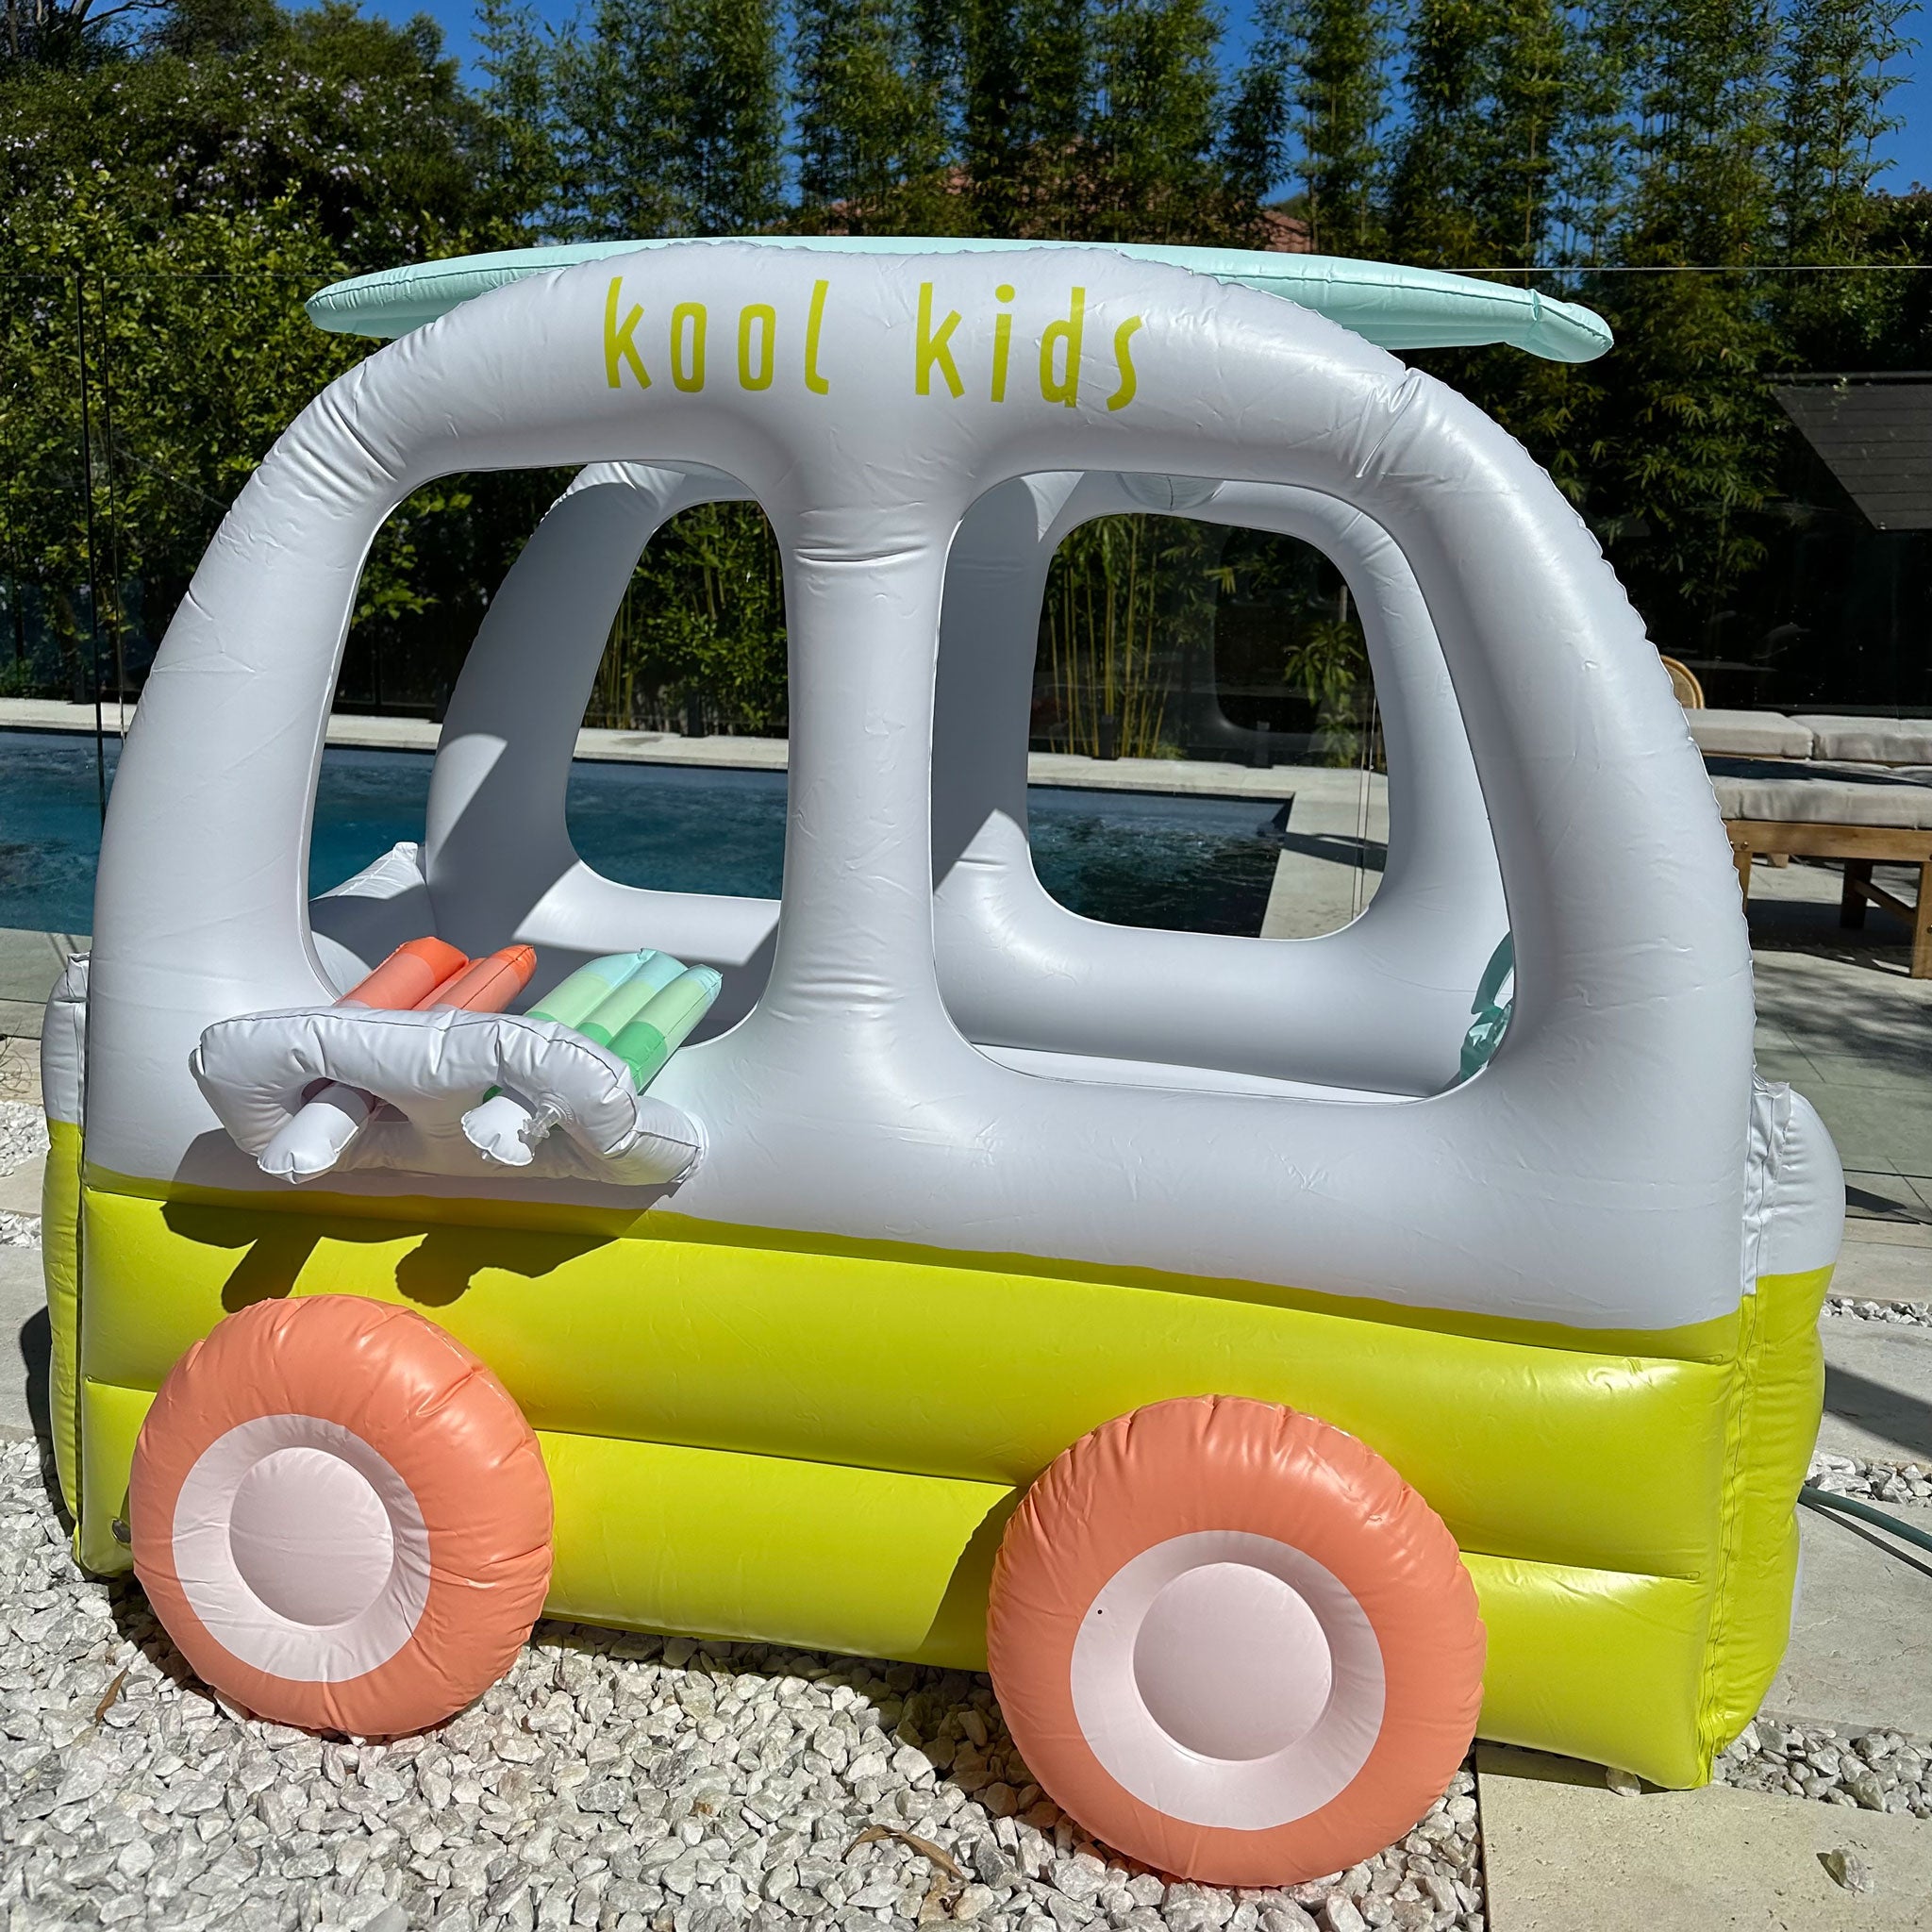 Inflatable Cubby | Ice Cream Van